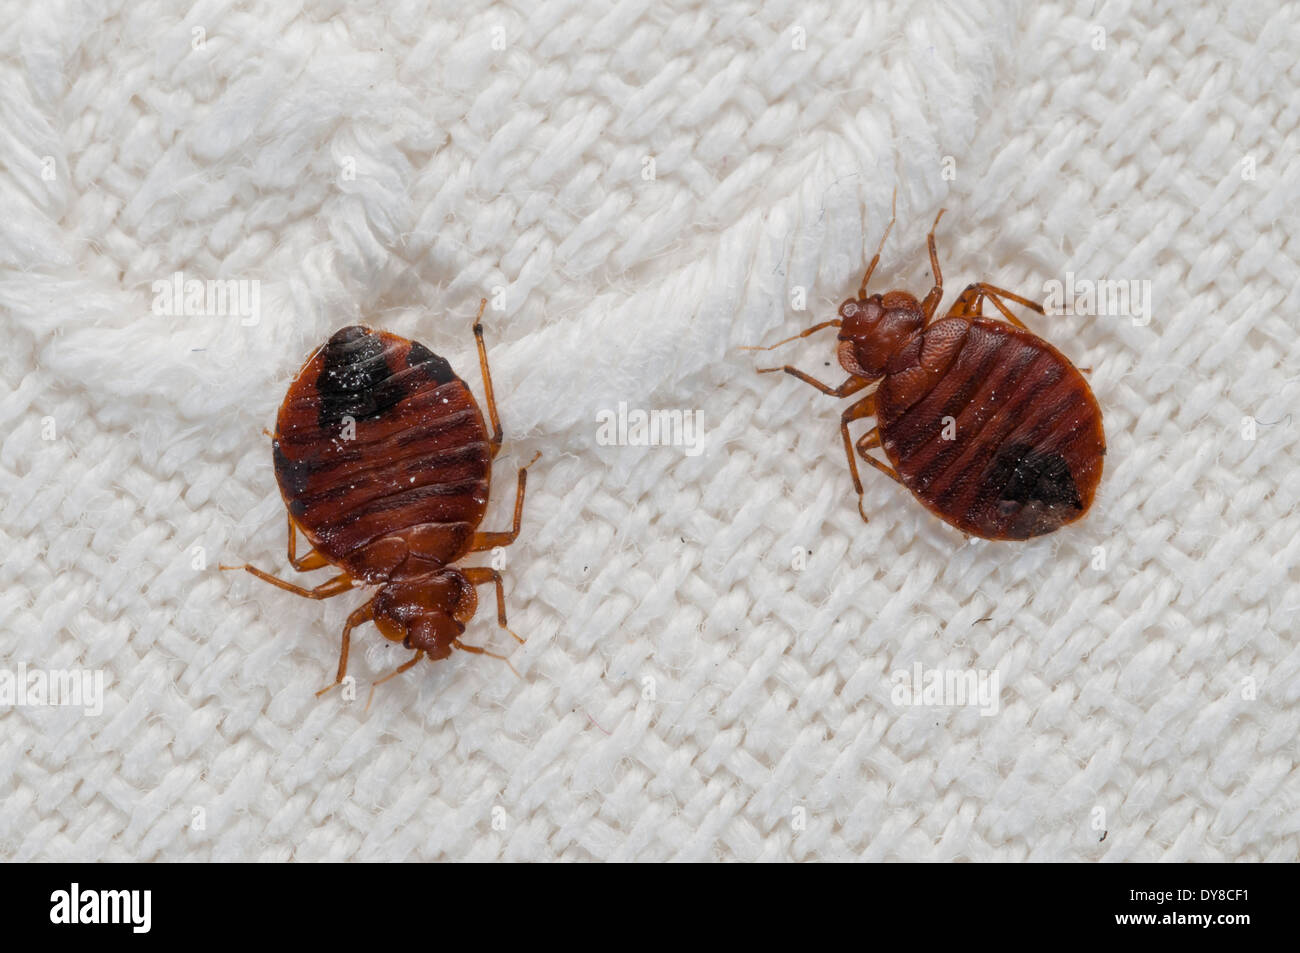 Les punaises de lit (Cimex lectularius) l'émergence d'espèces nuisibles, sur un drap de lit brodé, Espagne Banque D'Images